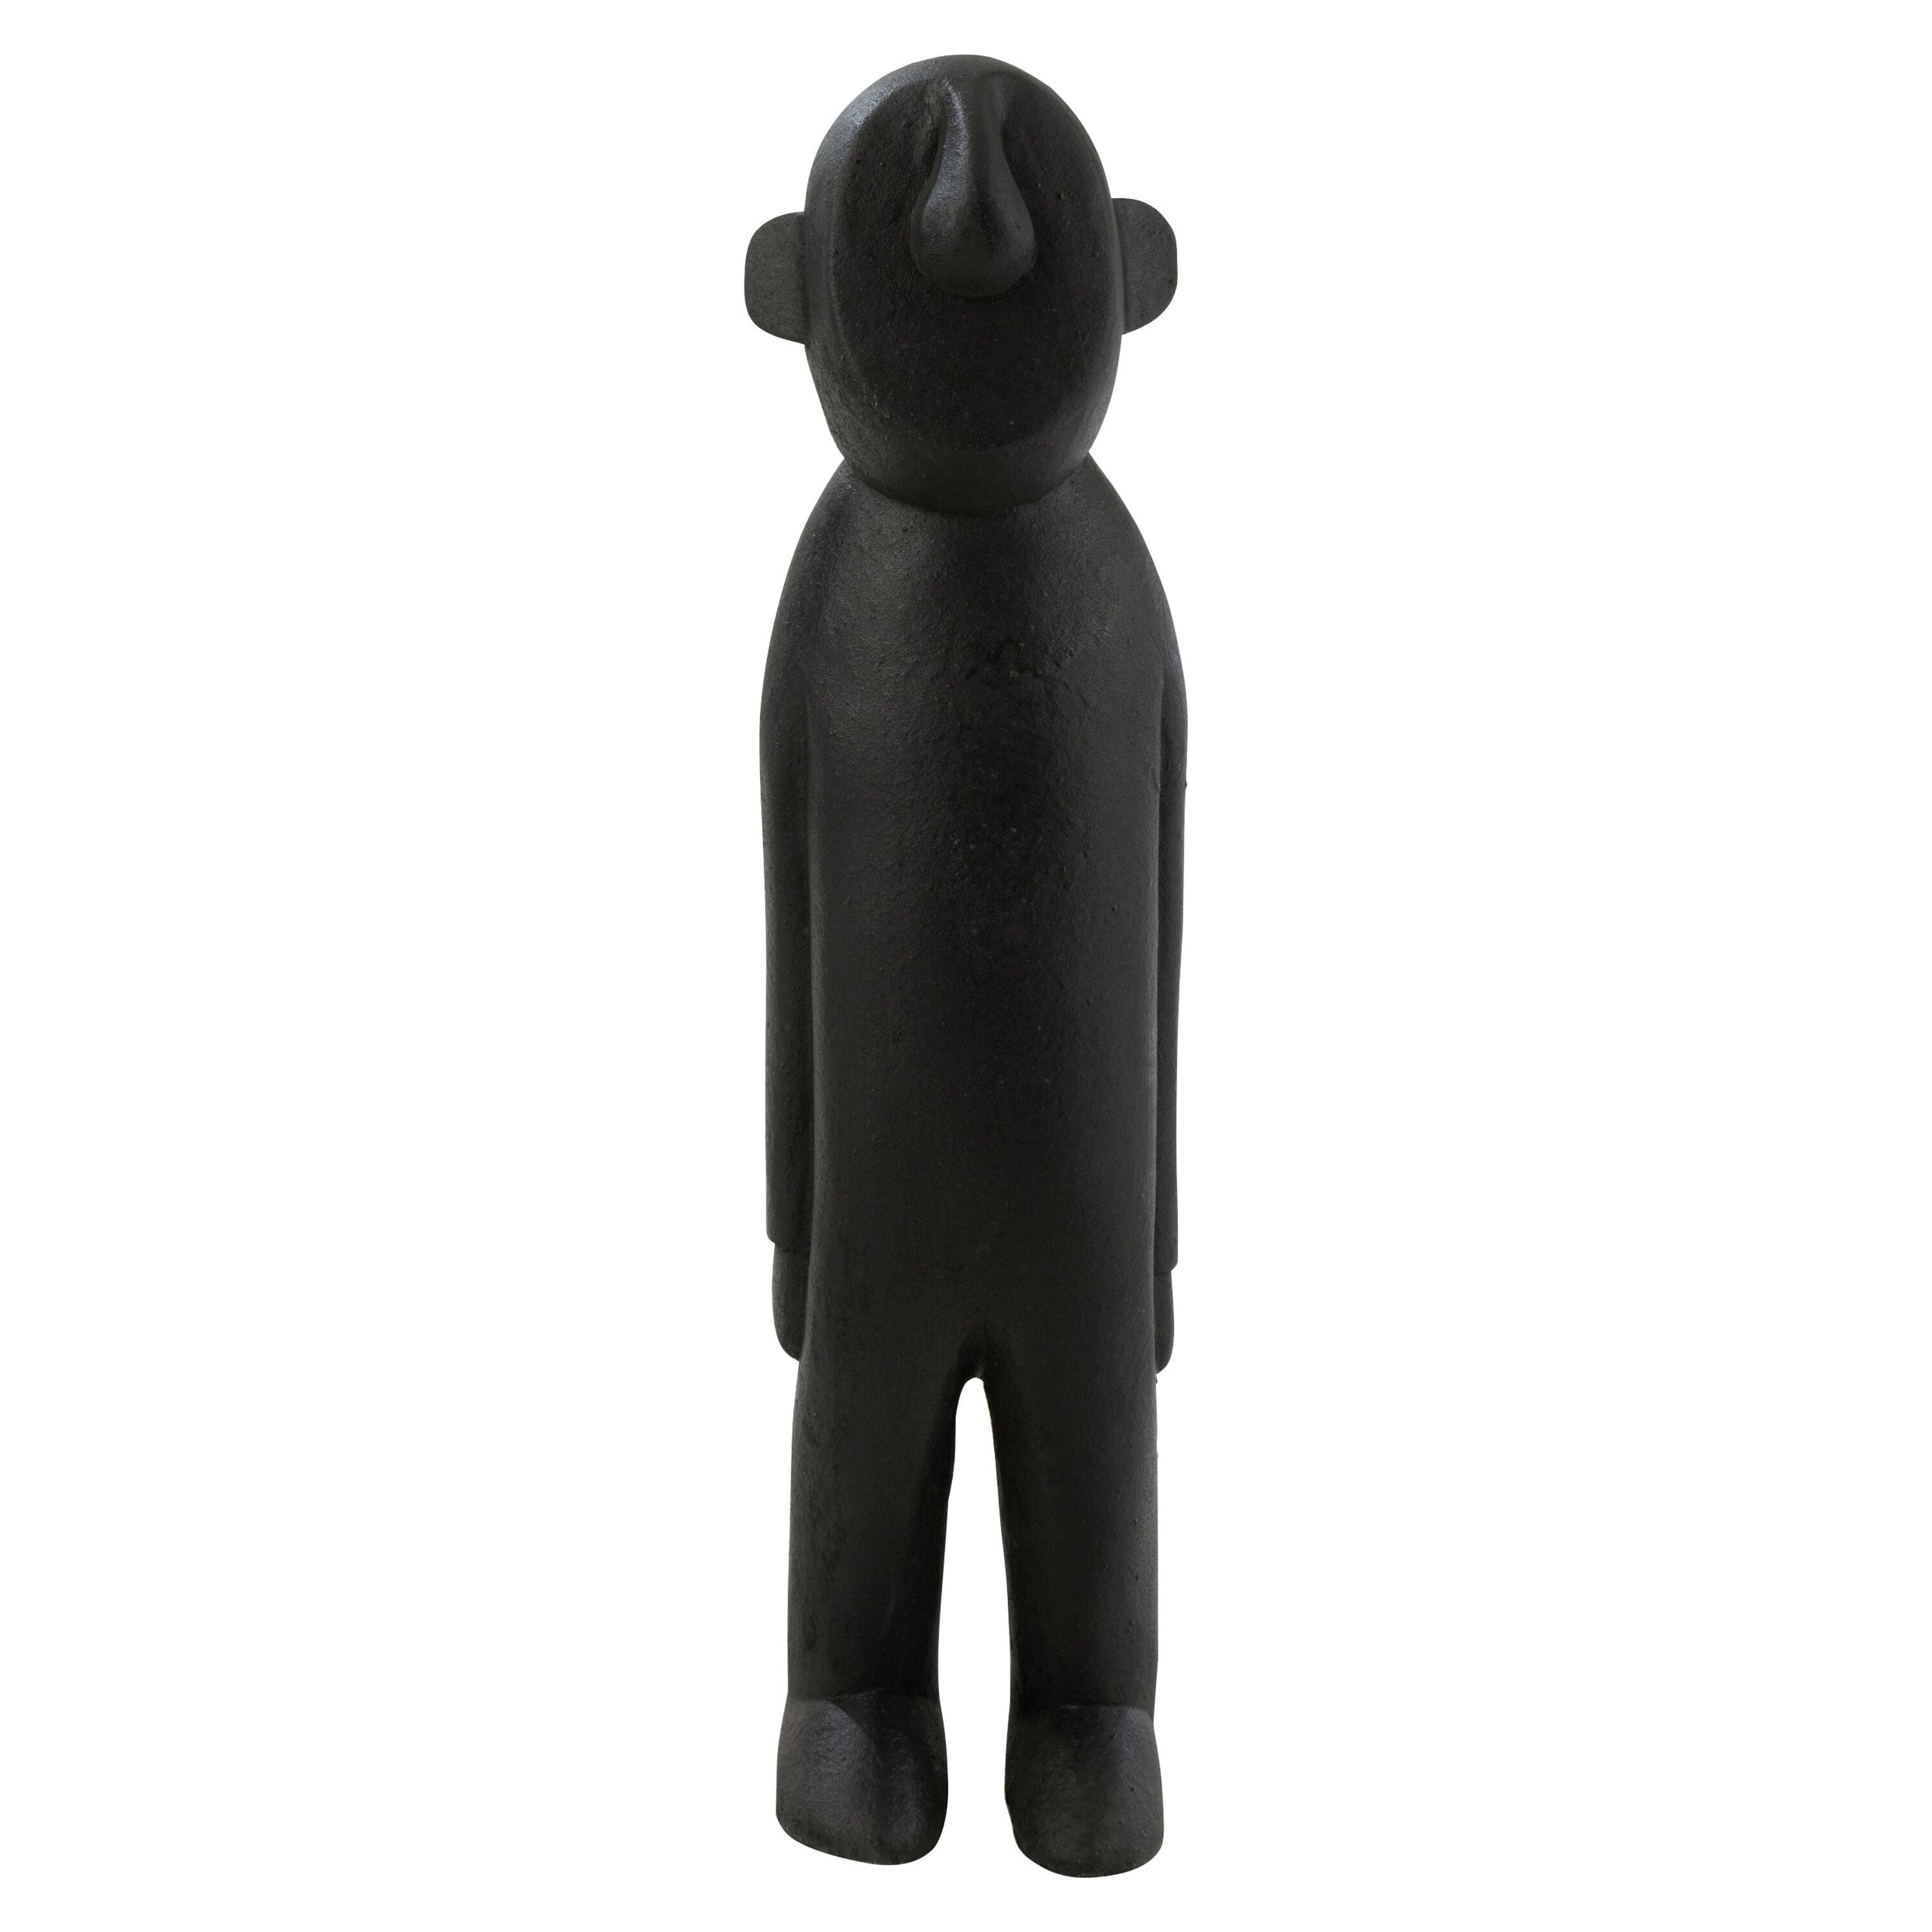 Figurine Ngurah Wood Black Large